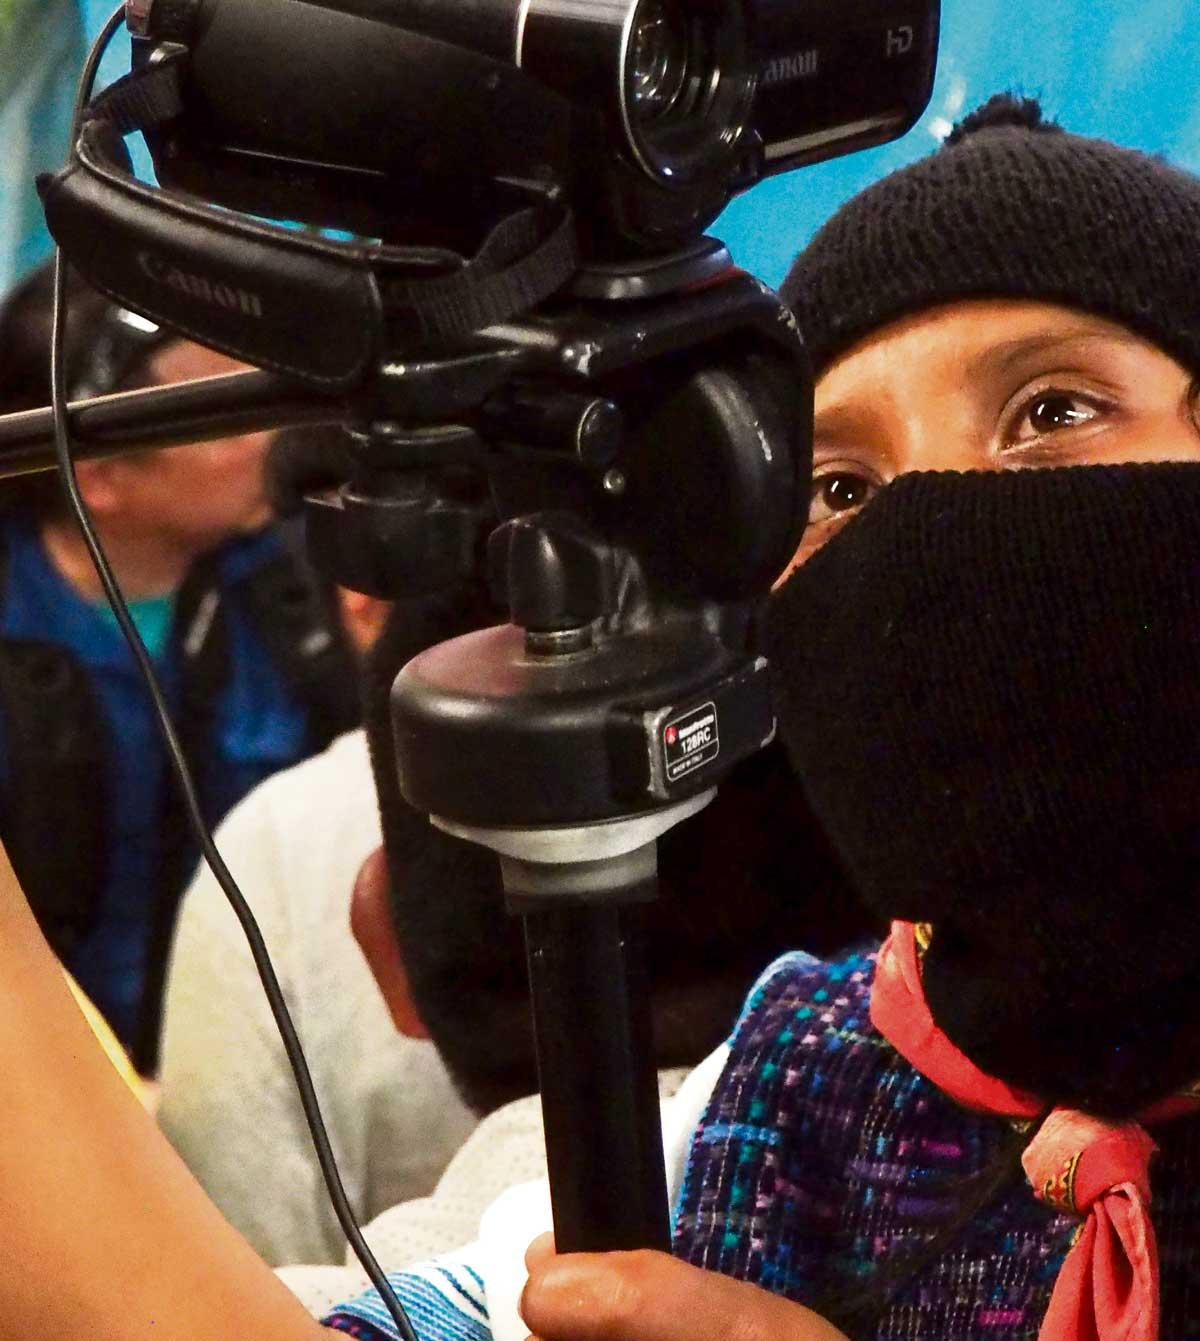 Traditionelle Kleidung, moderne Technik. Eine Zapatista dokumentiert die Veranstaltung